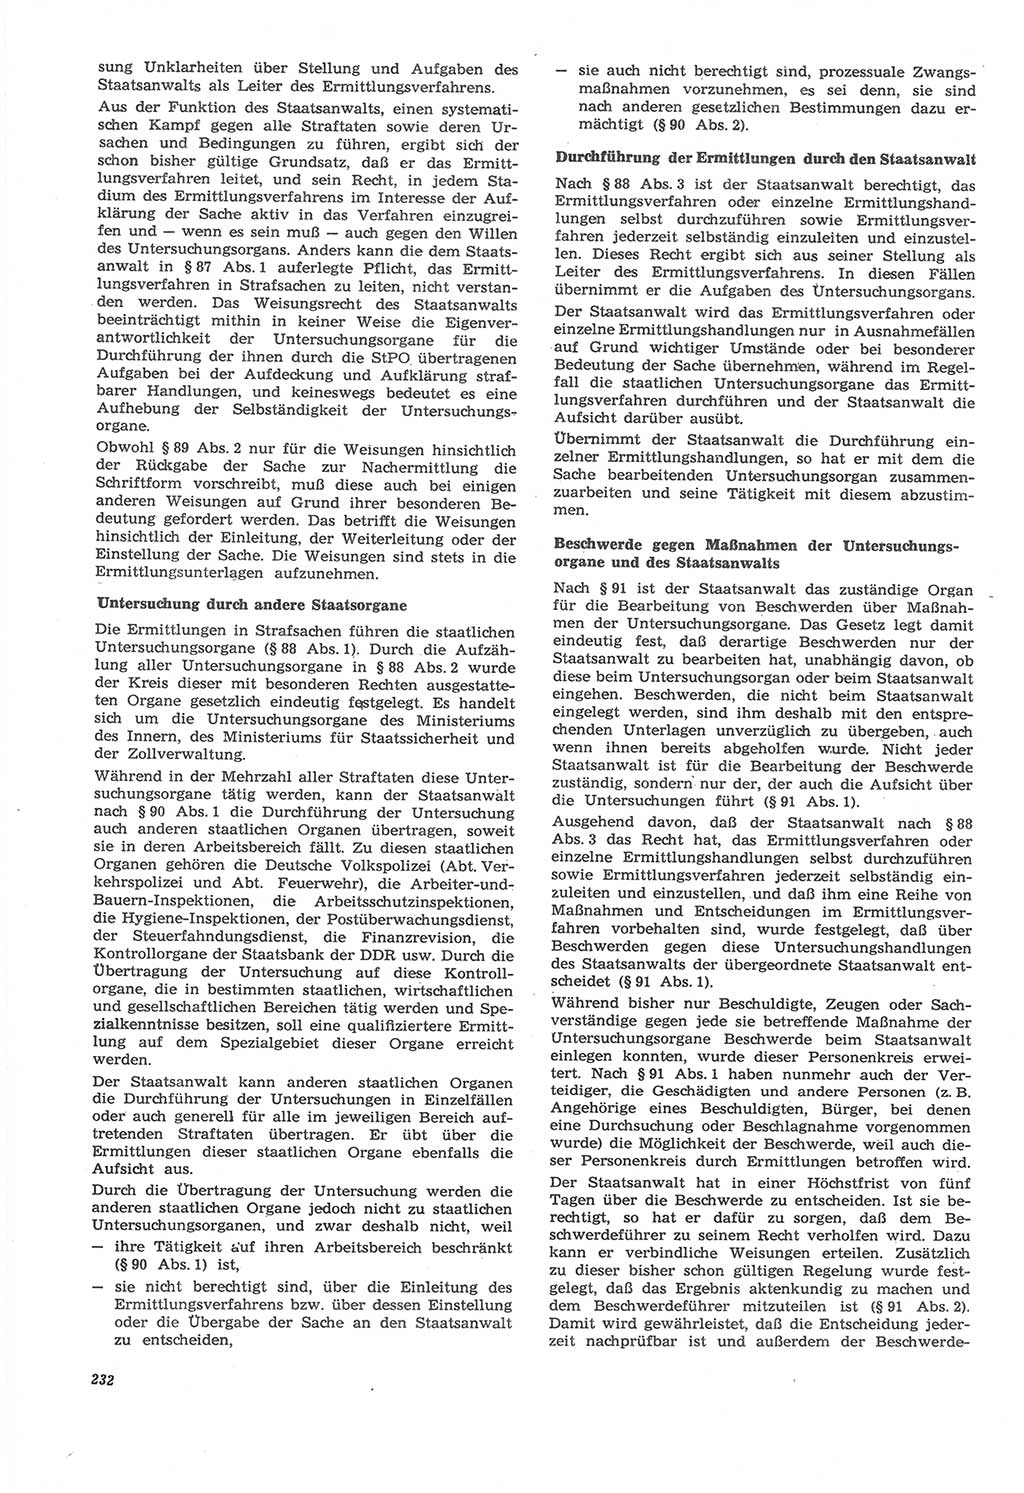 Neue Justiz (NJ), Zeitschrift für Recht und Rechtswissenschaft [Deutsche Demokratische Republik (DDR)], 22. Jahrgang 1968, Seite 232 (NJ DDR 1968, S. 232)